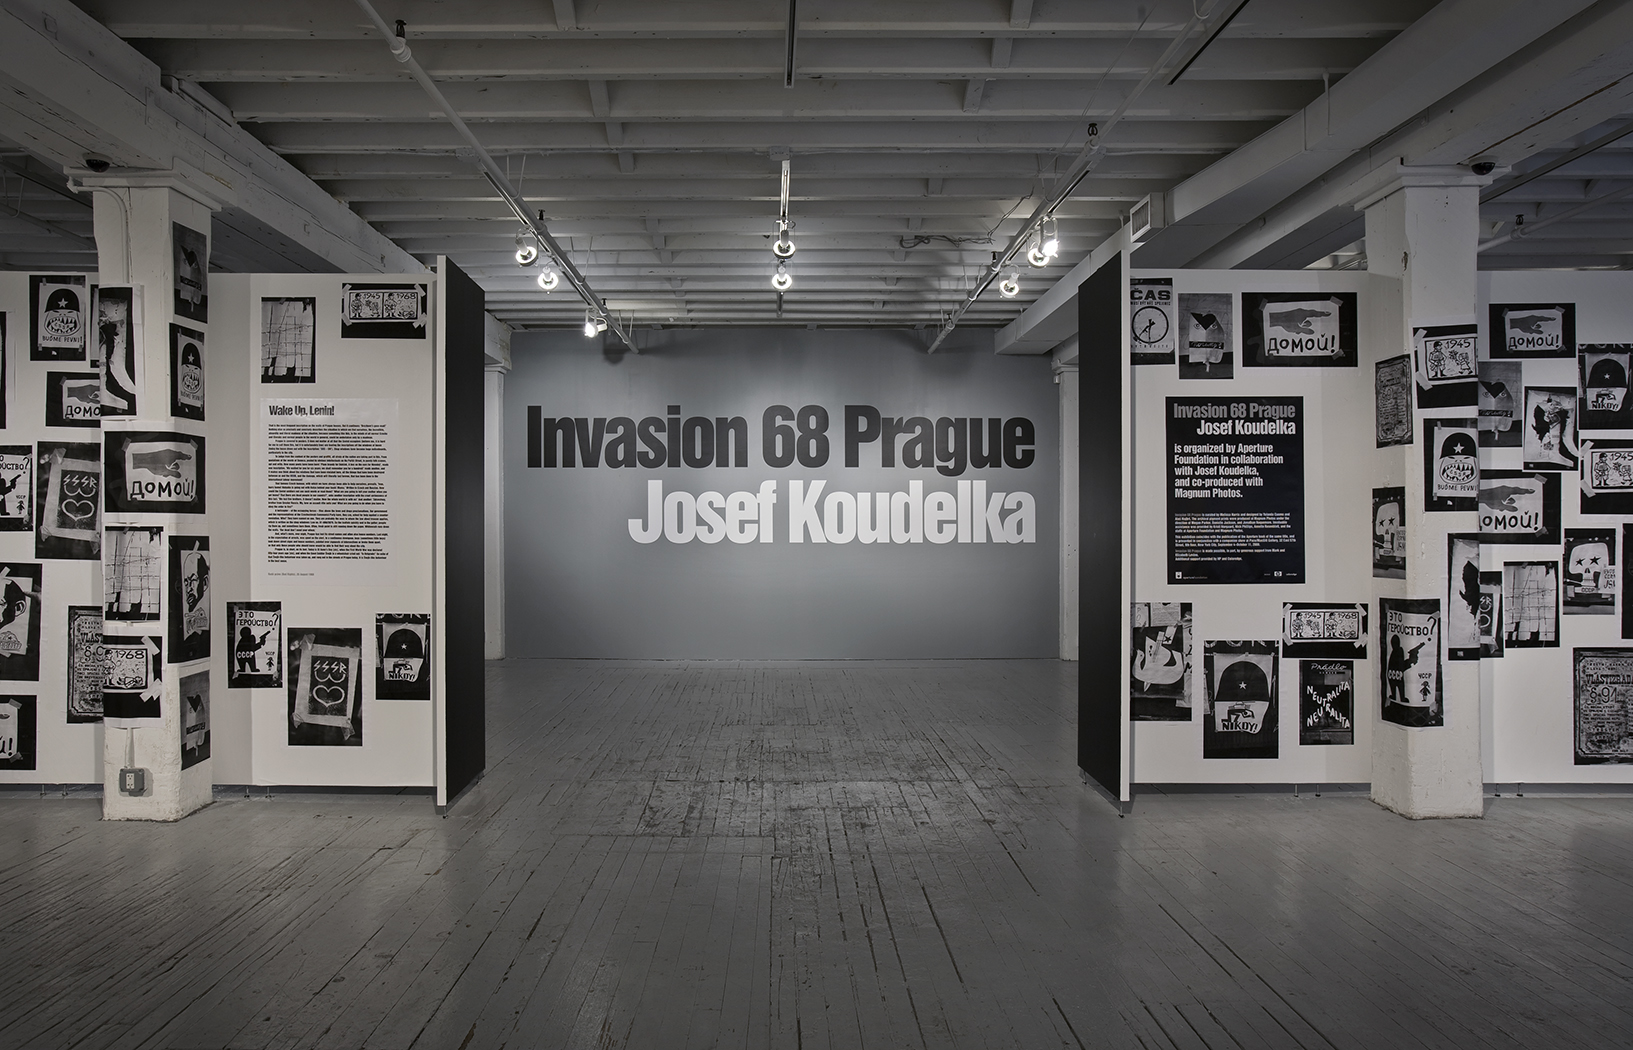 Josef Koudelka: Invasion 68 Prague